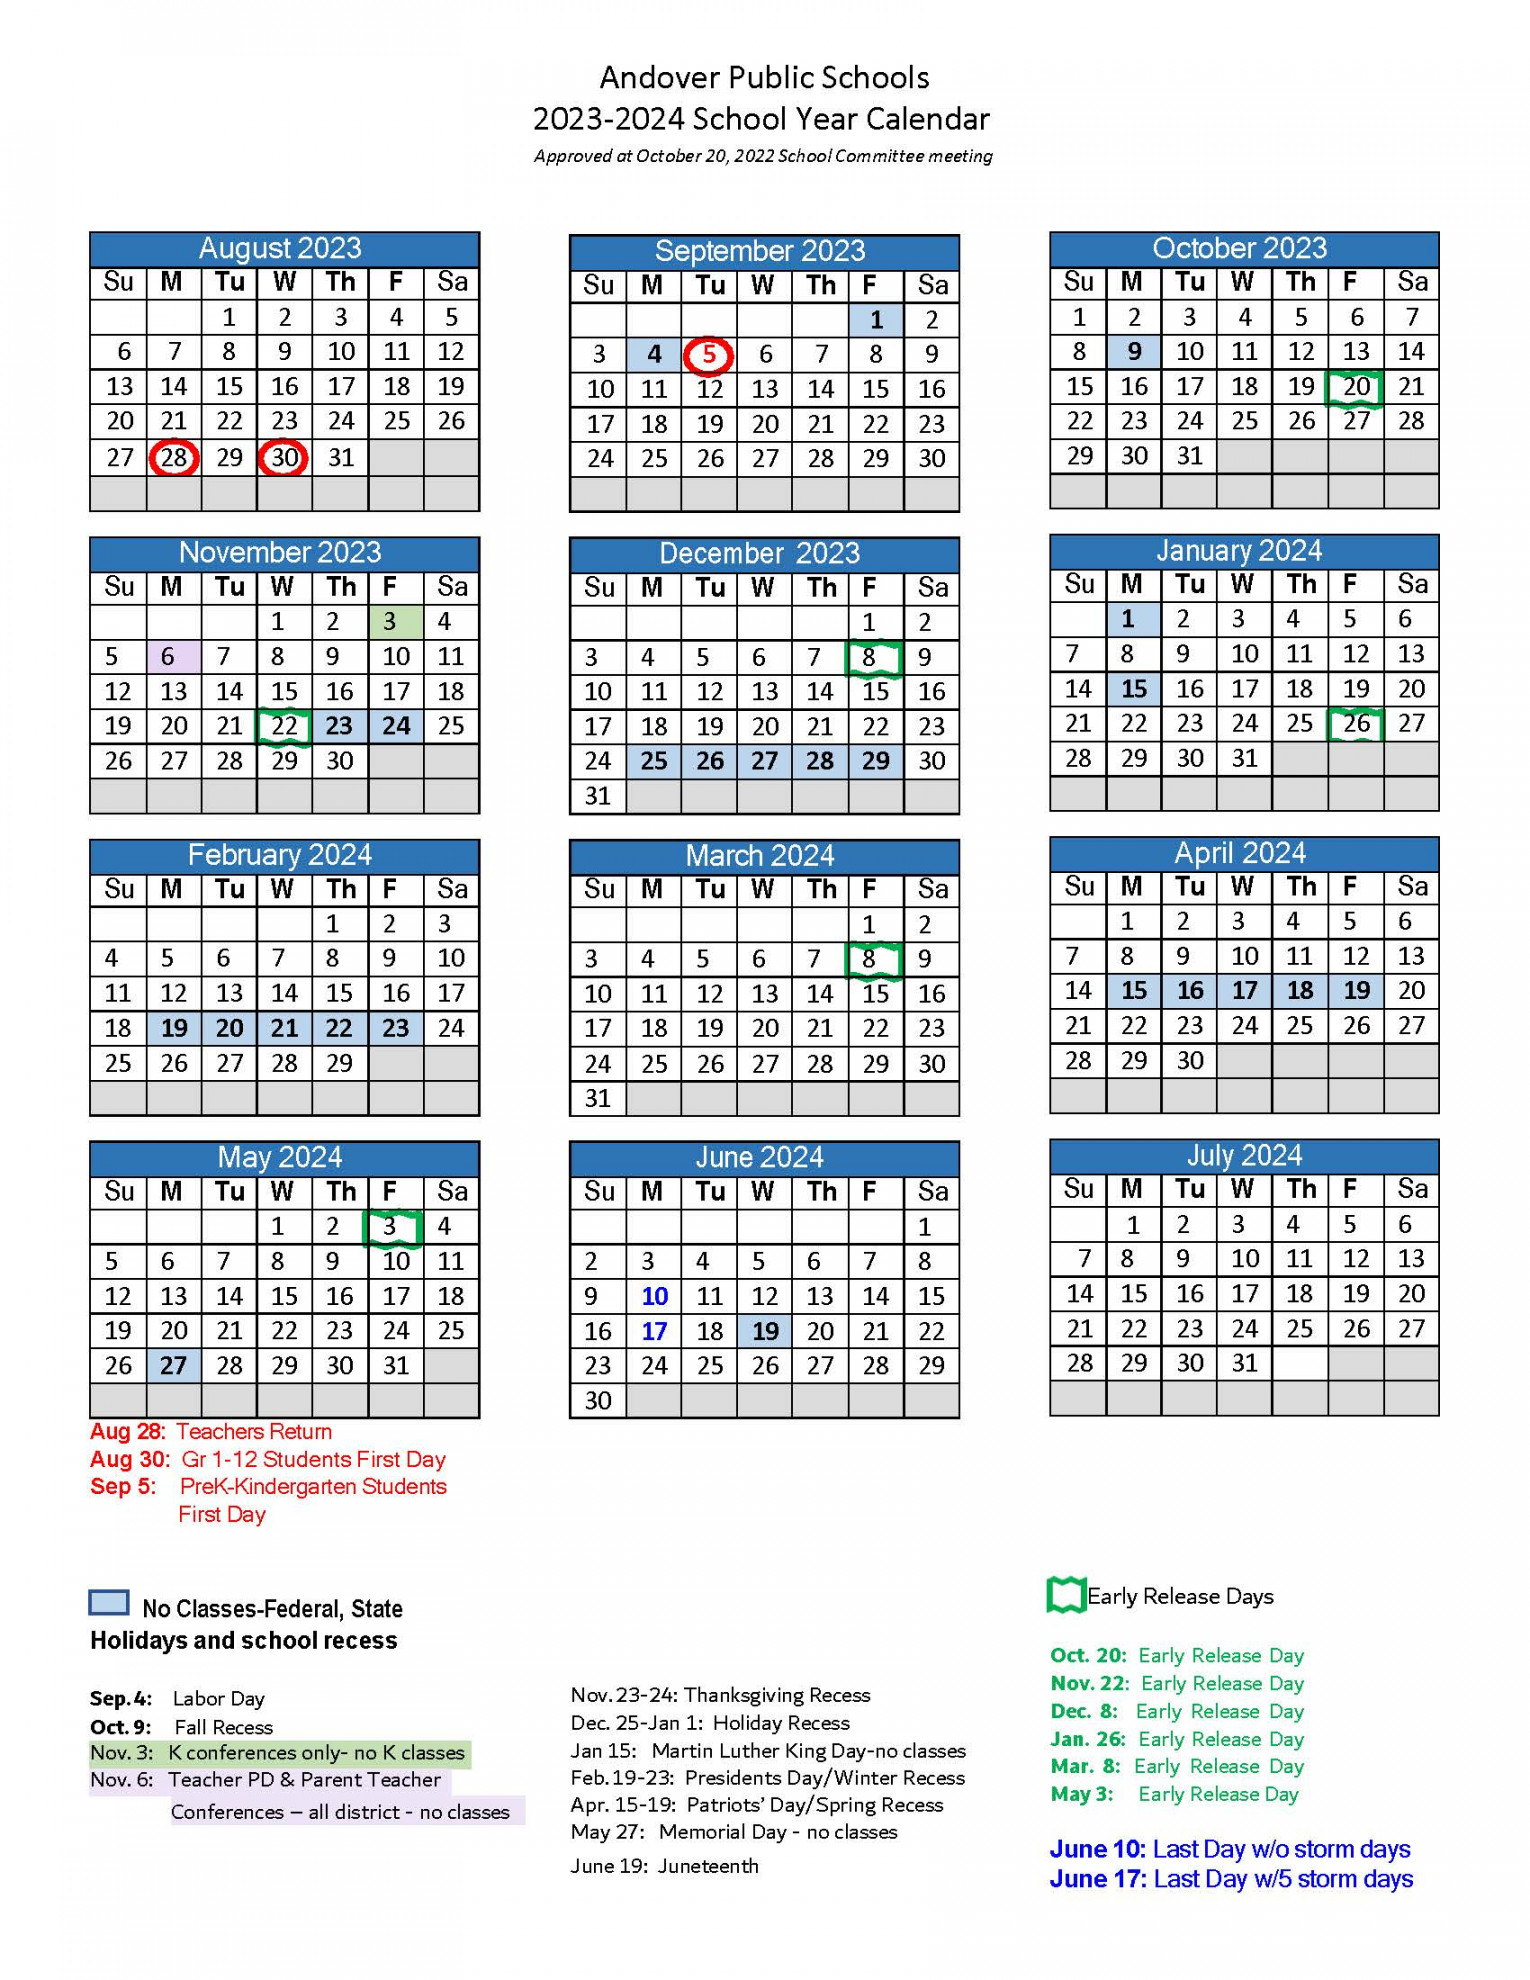 School Year Calendar -  Andover Public Schools - Official